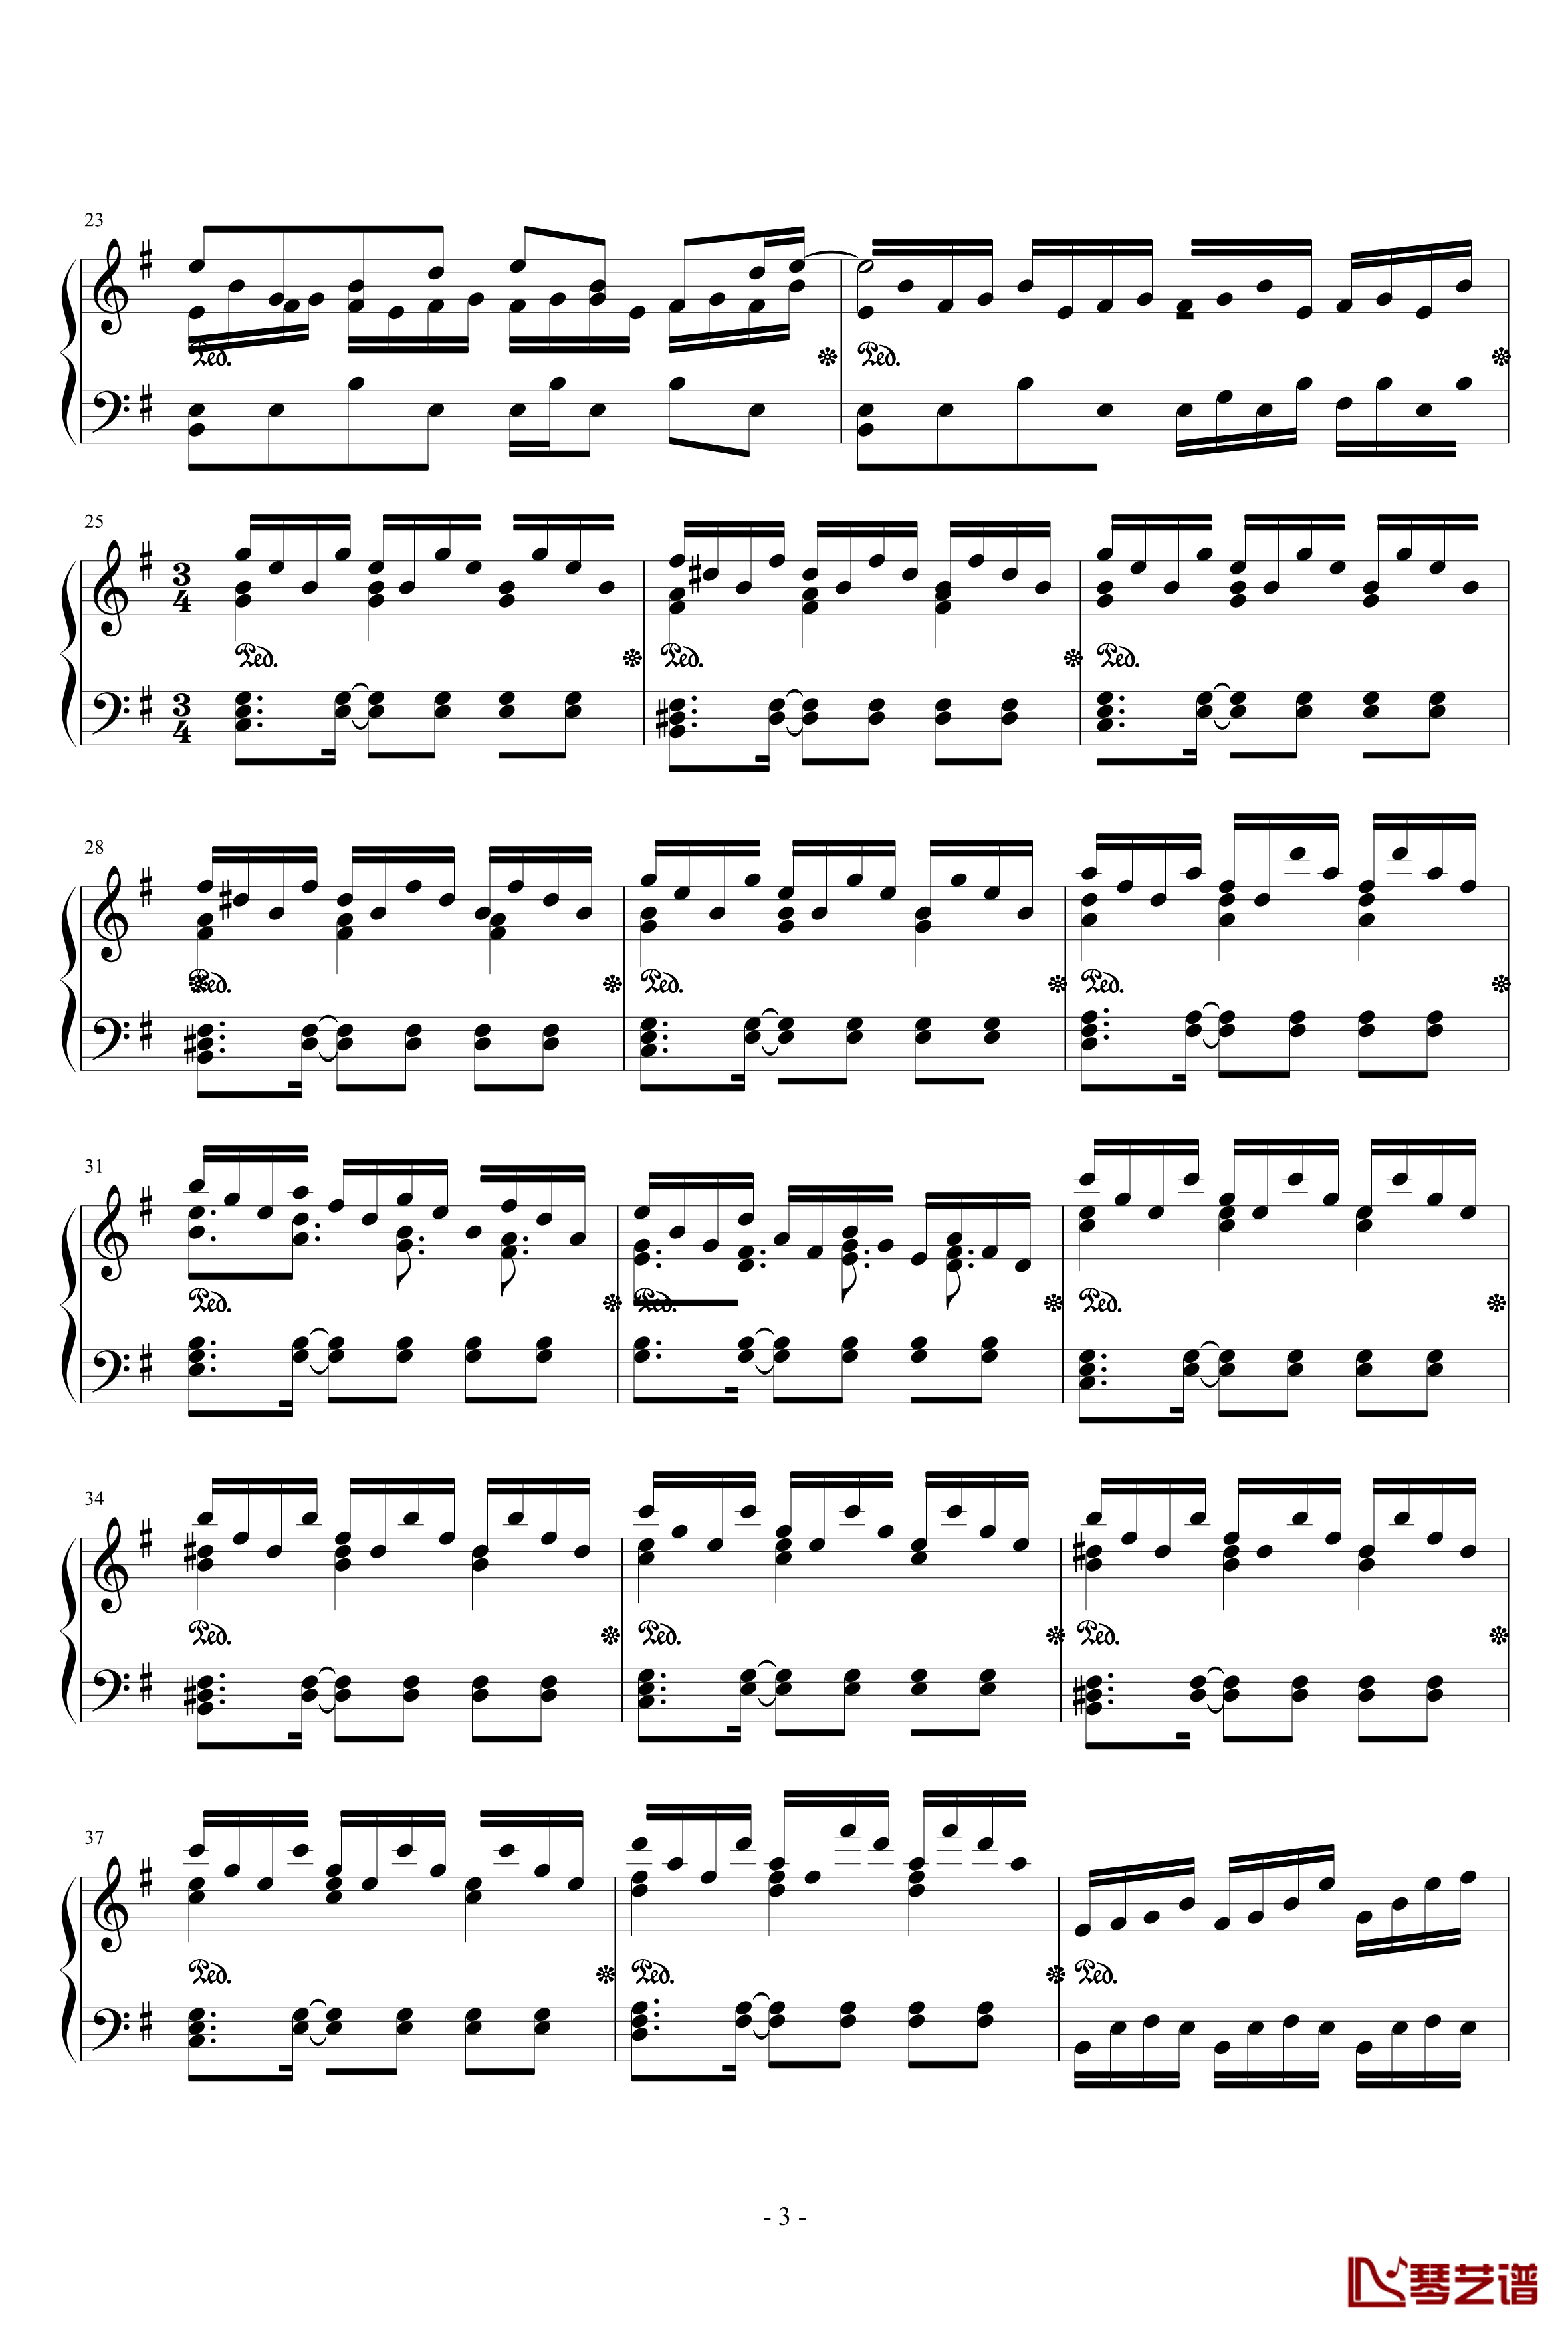 ヴォヤージュ1969钢琴谱-HARD-东方永夜抄第6面-东方project3